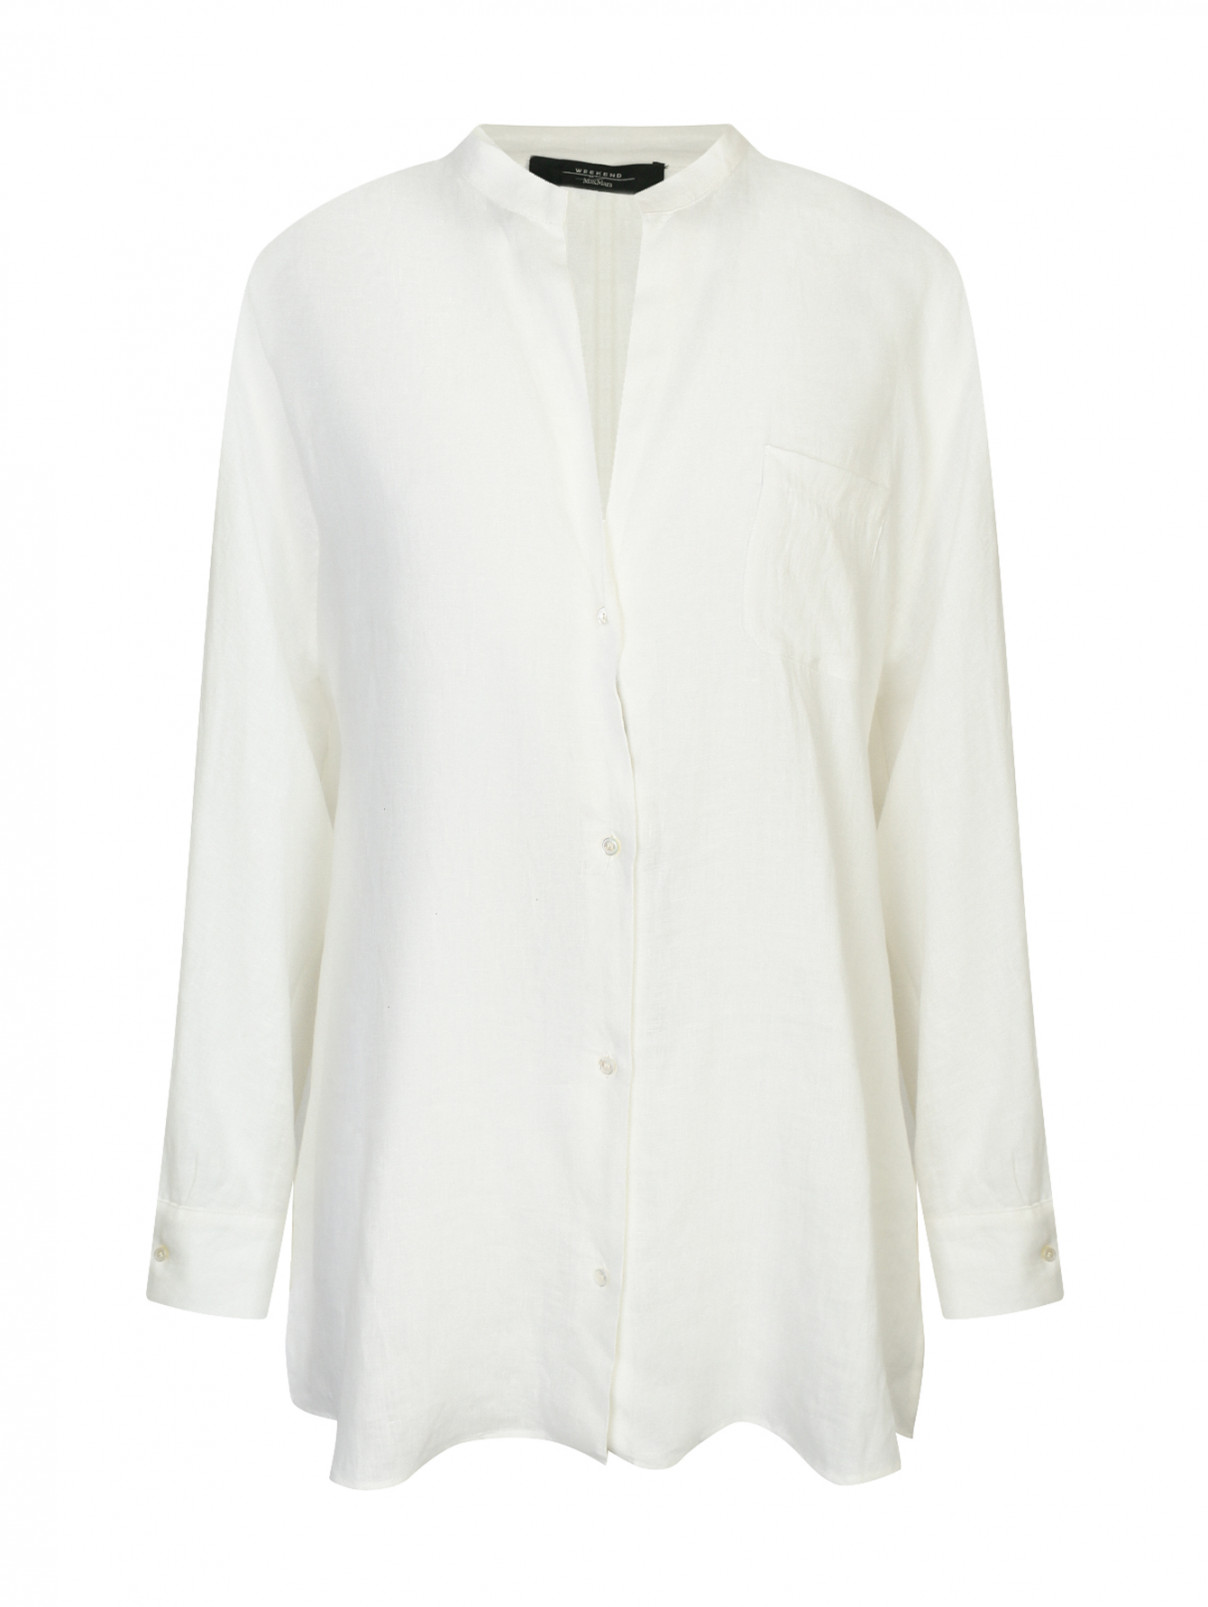 Рубашка свободного кроя из льна Weekend Max Mara  –  Общий вид  – Цвет:  Белый